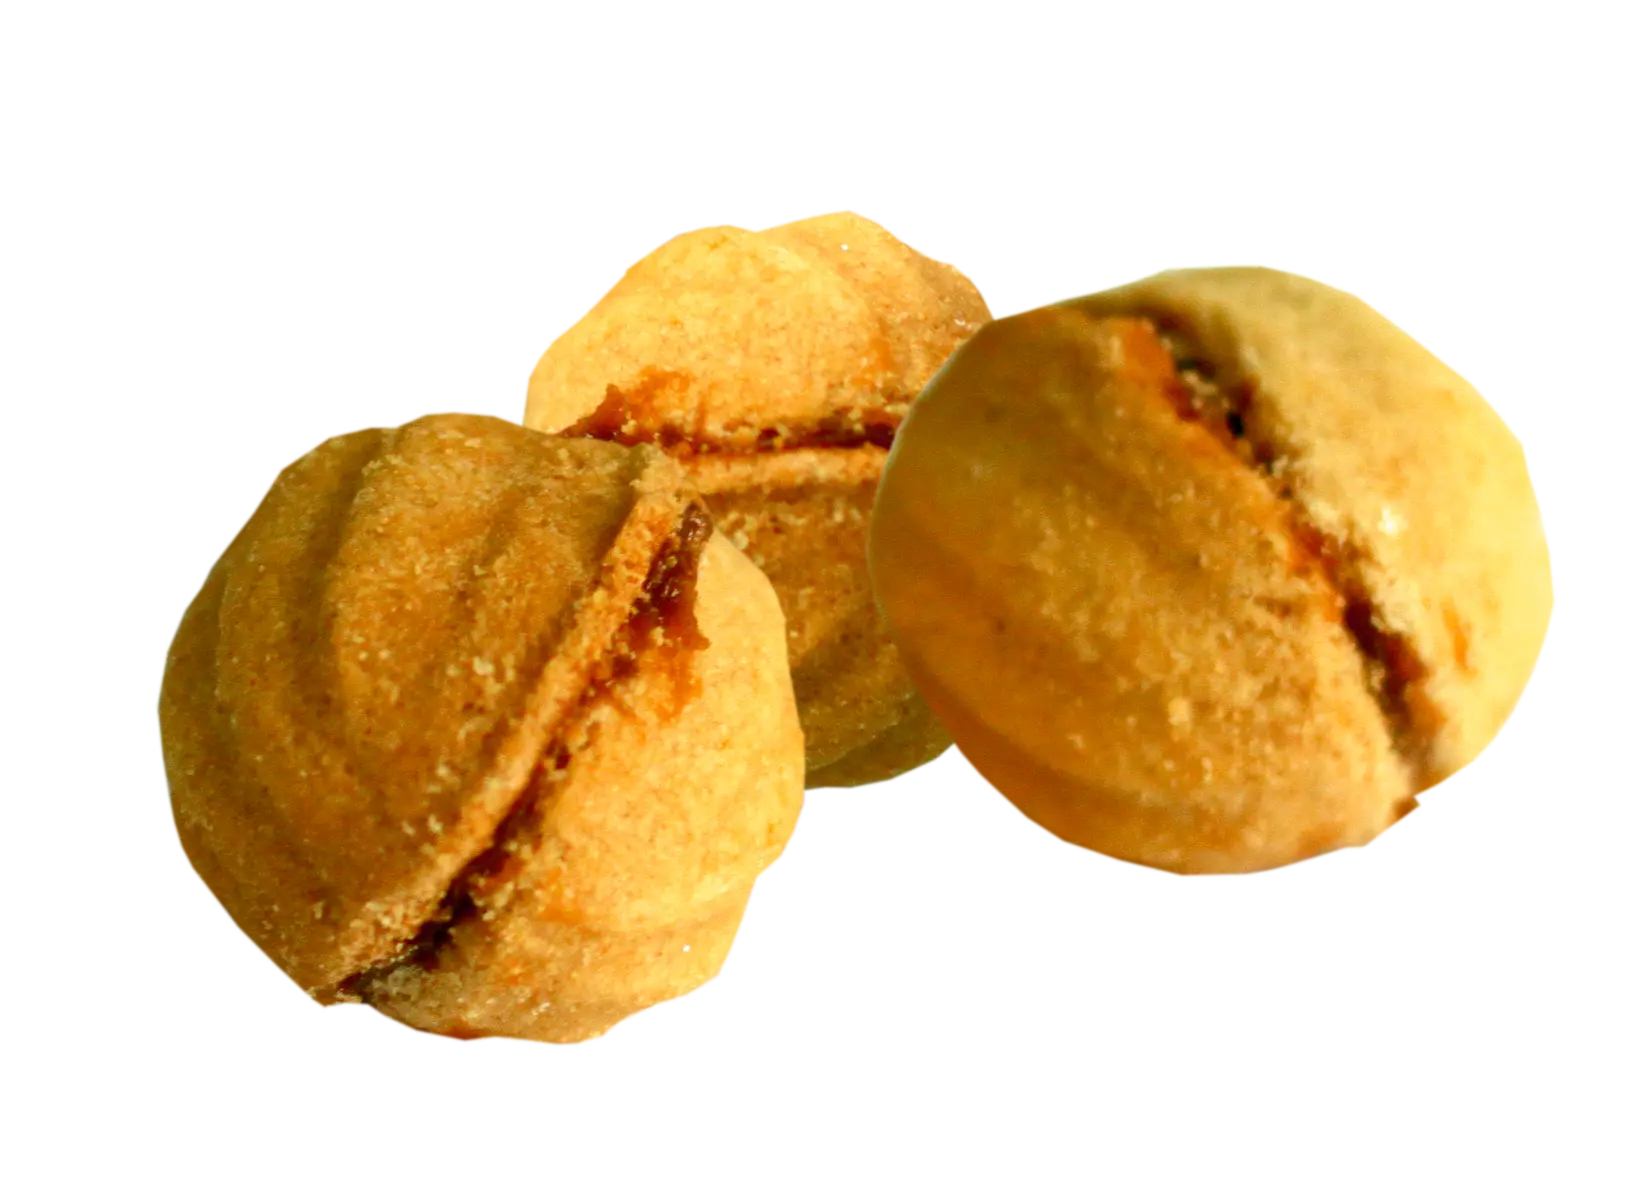 Орешки с варёной сгущёнкой  оптом - Кондитерская фабрика «СладИС»